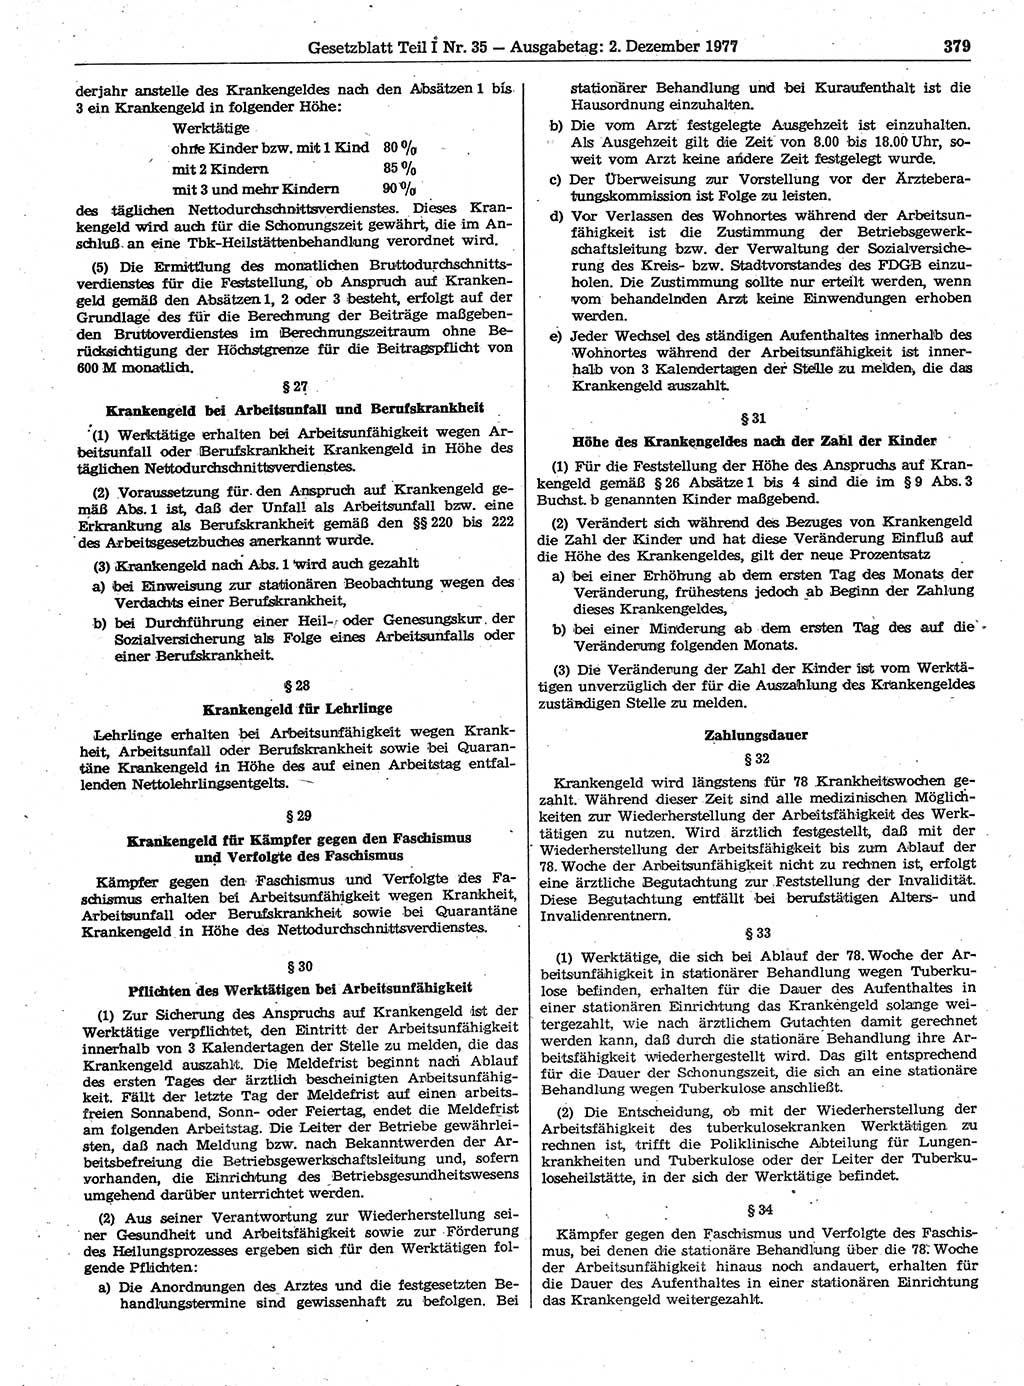 Gesetzblatt (GBl.) der Deutschen Demokratischen Republik (DDR) Teil Ⅰ 1977, Seite 379 (GBl. DDR Ⅰ 1977, S. 379)